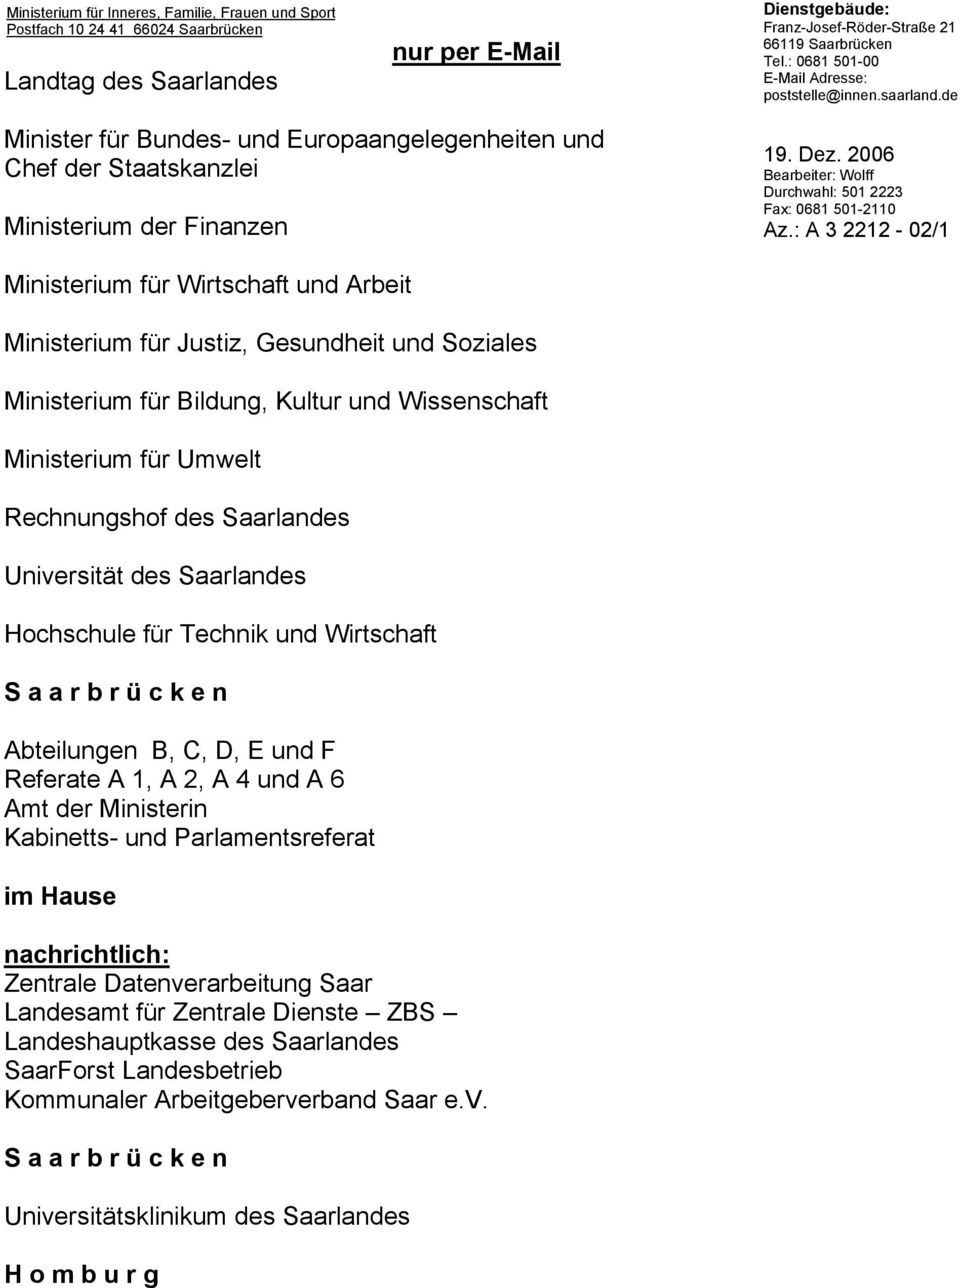 2006 Bearbeiter: Wolff Durchwahl: 501 2223 Fax: 0681 501-2110 Az.